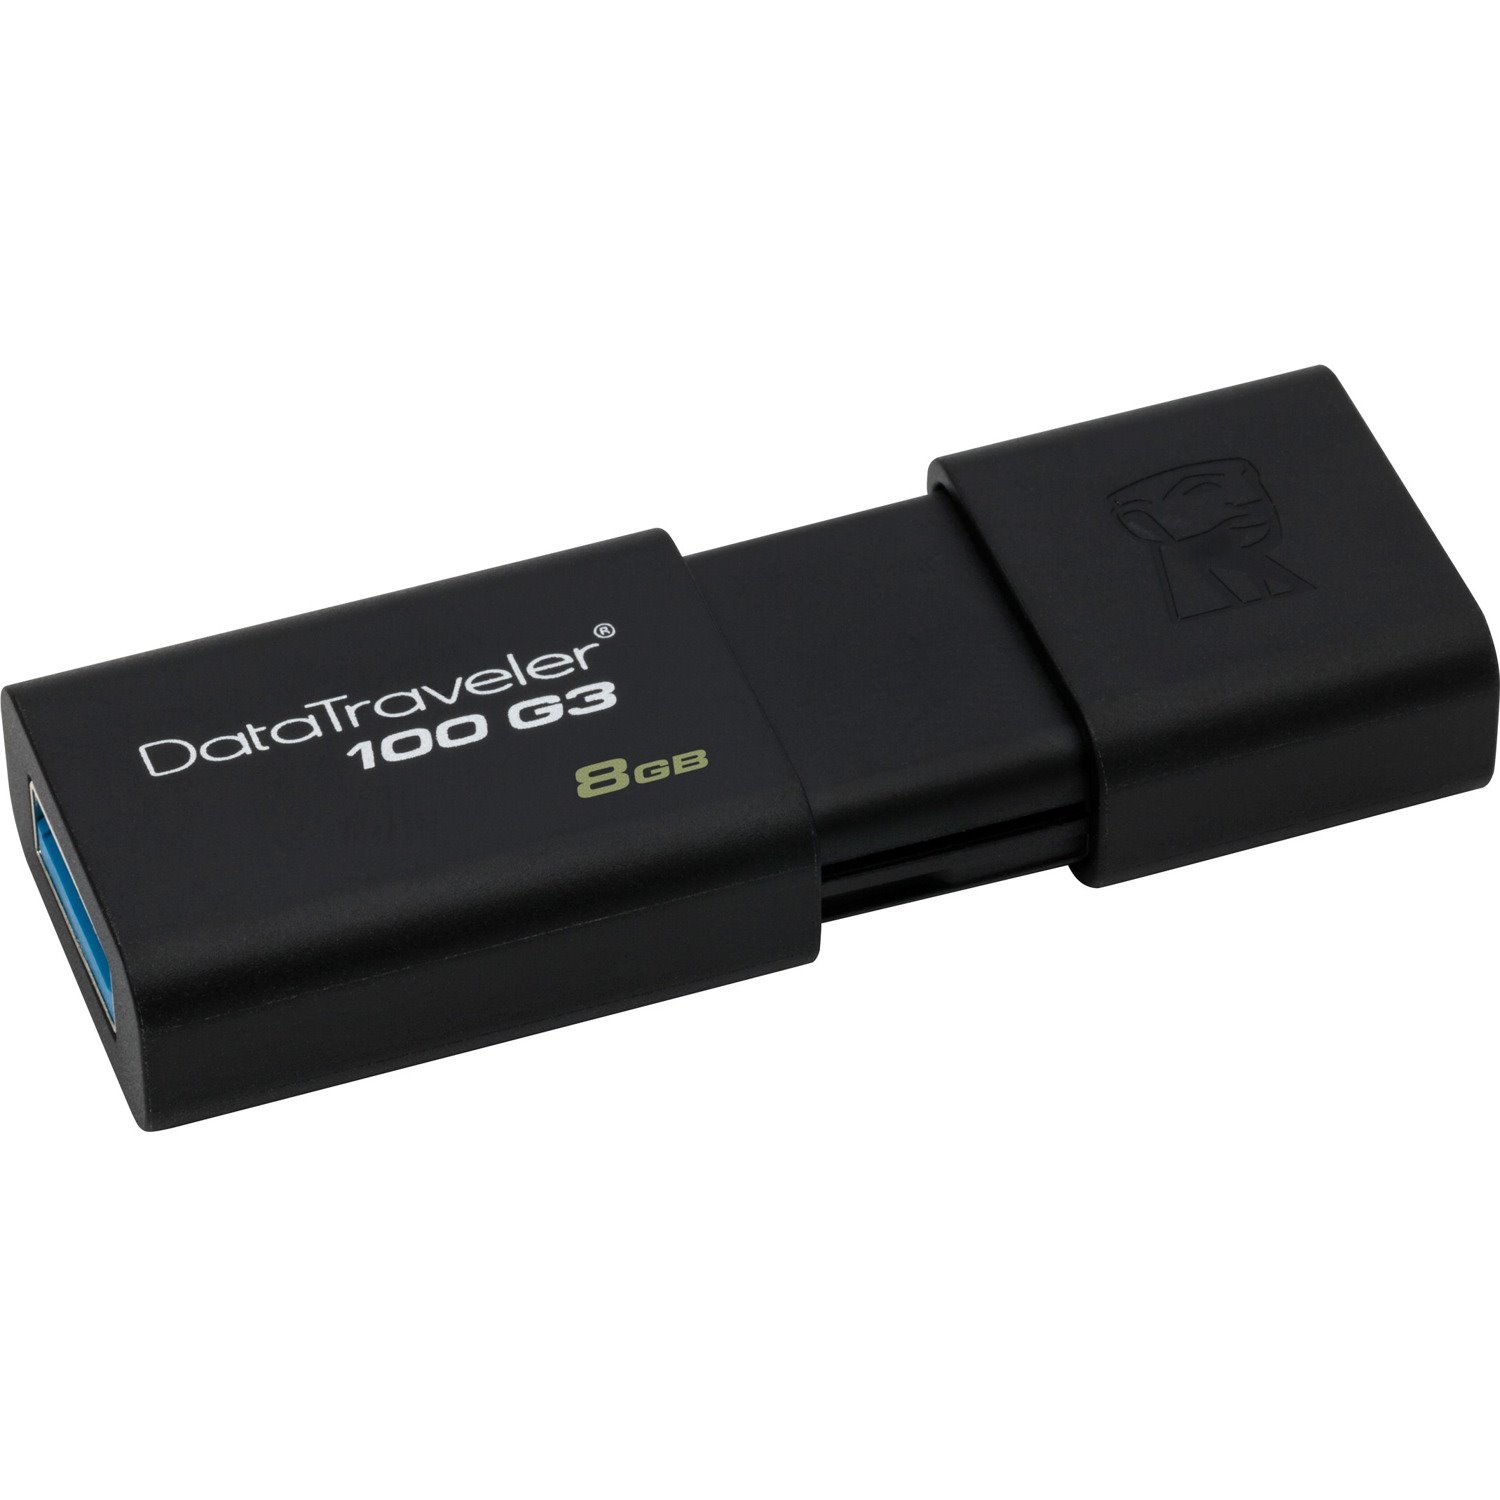 Kingston DataTraveler 100 G3 8 GB USB 3.0 Flash Drive